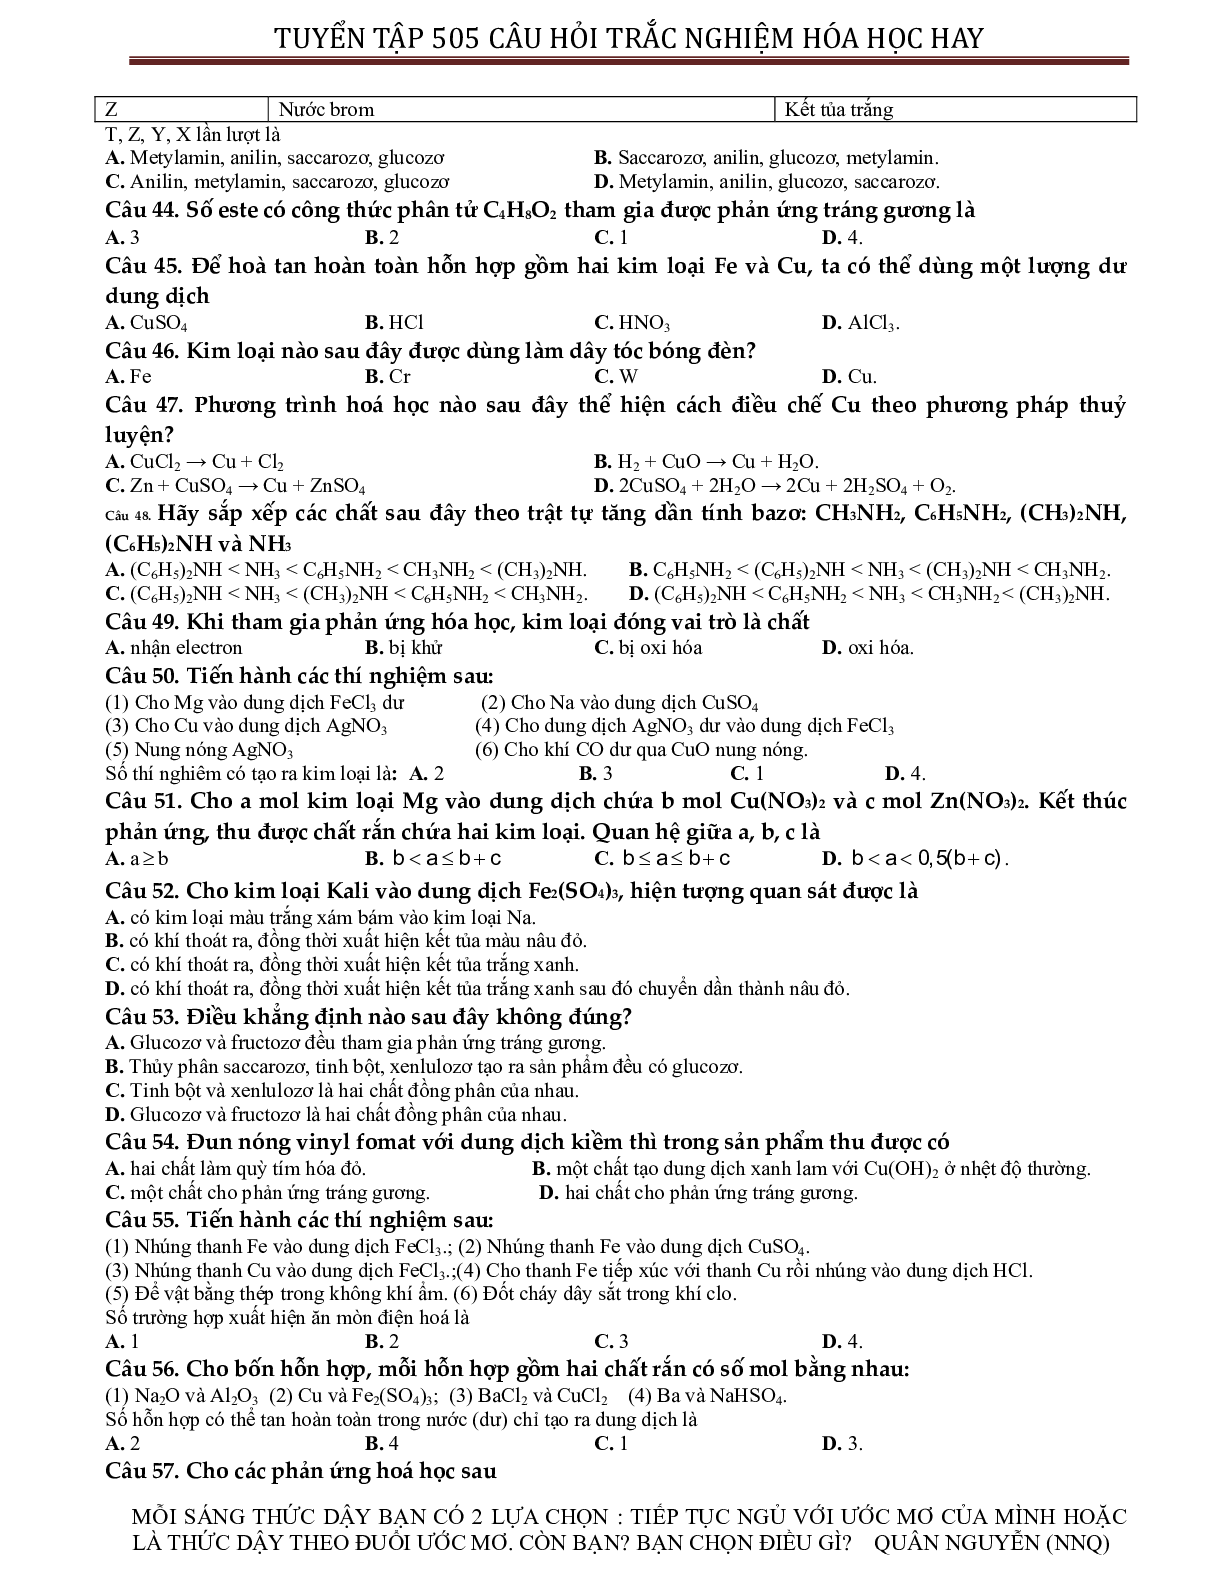 Tuyển chọn 505 câu hỏi lí thuyết trắc nghiệm hóa học 12 có đáp án, chọn lọc (trang 5)